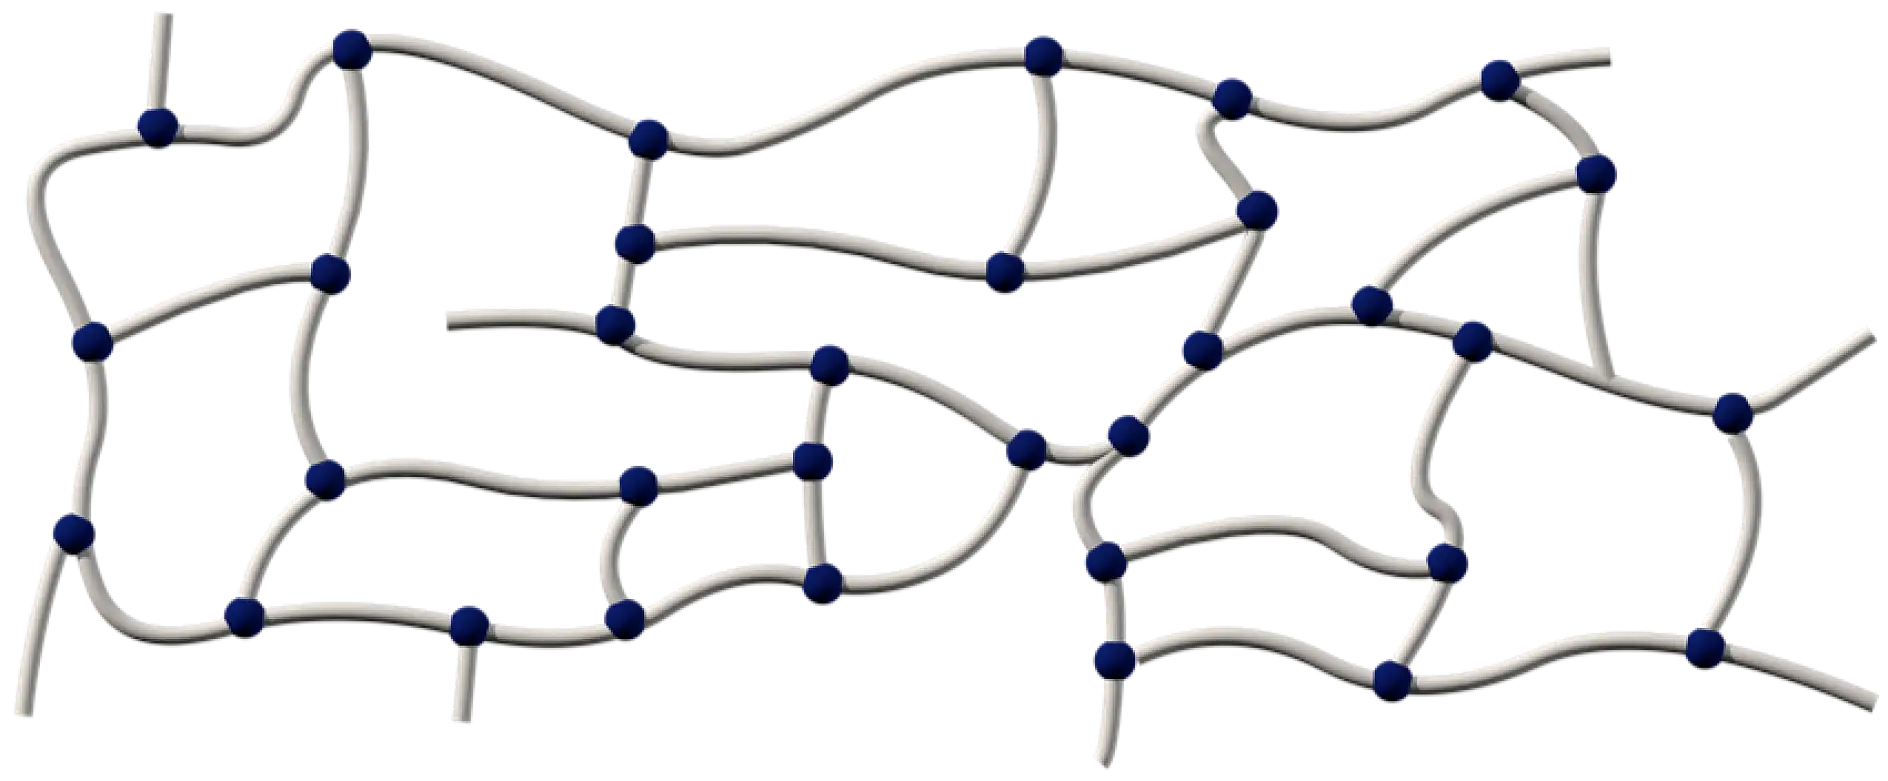 Acrylat-Klebmassen bestehen aus langen Polymerketten, die durch verschiedene Methoden vernetzt werden: chemisch, durch UV-Strahlung oder durch Elektronenstrahlhärtung.